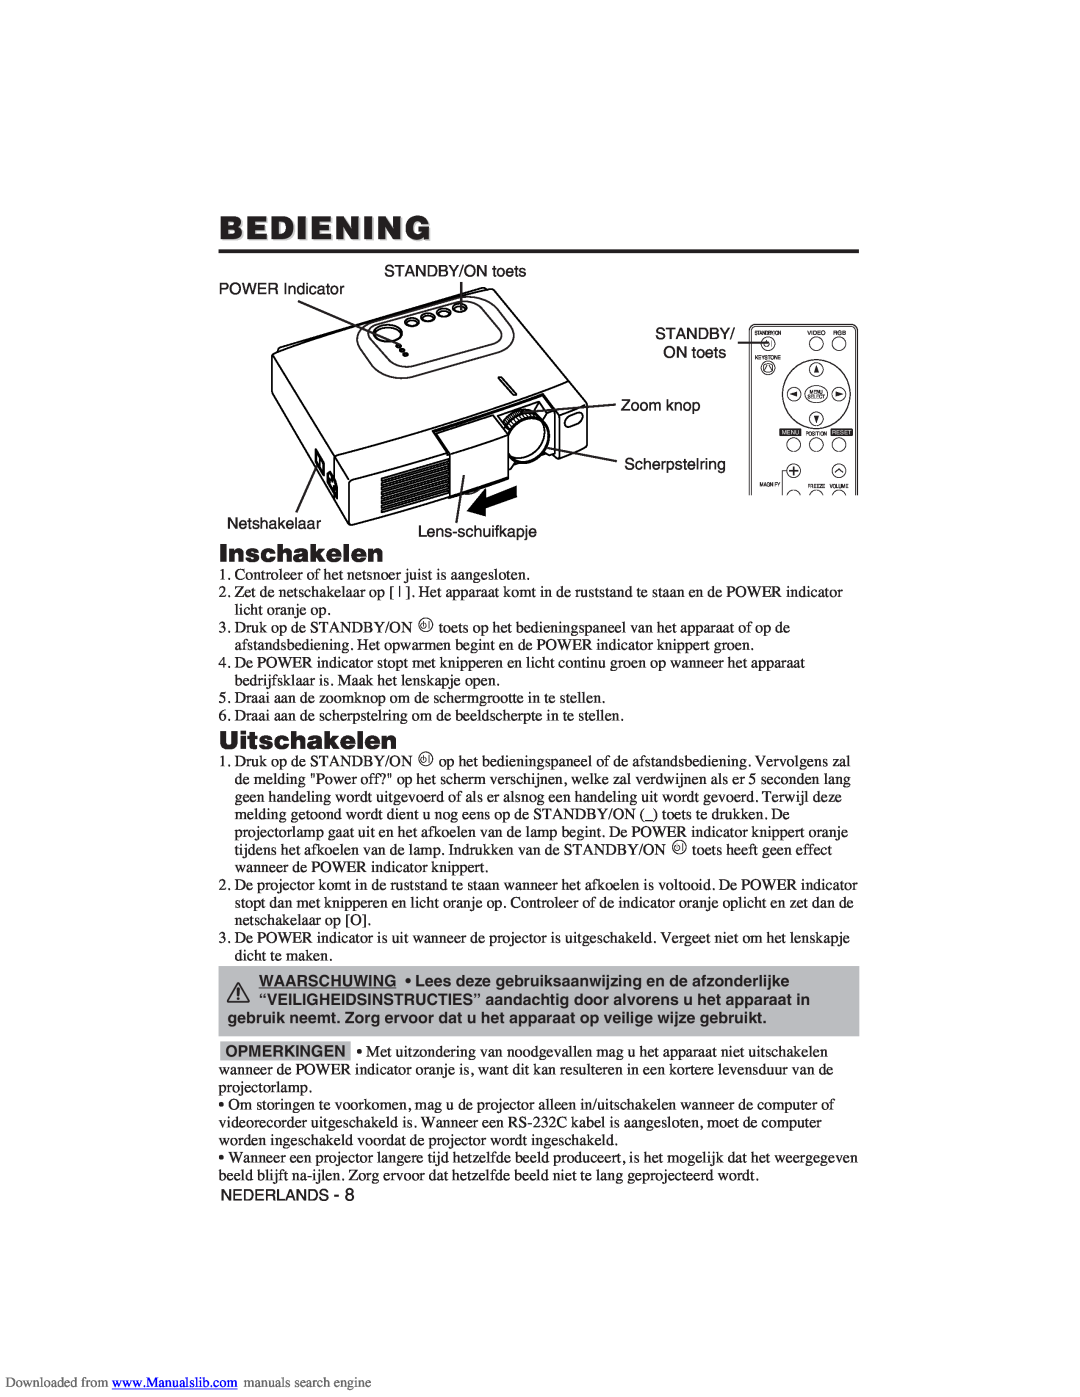 Hitachi CP-X275W user manual Bediening, Inschakelen, Uitschakelen 